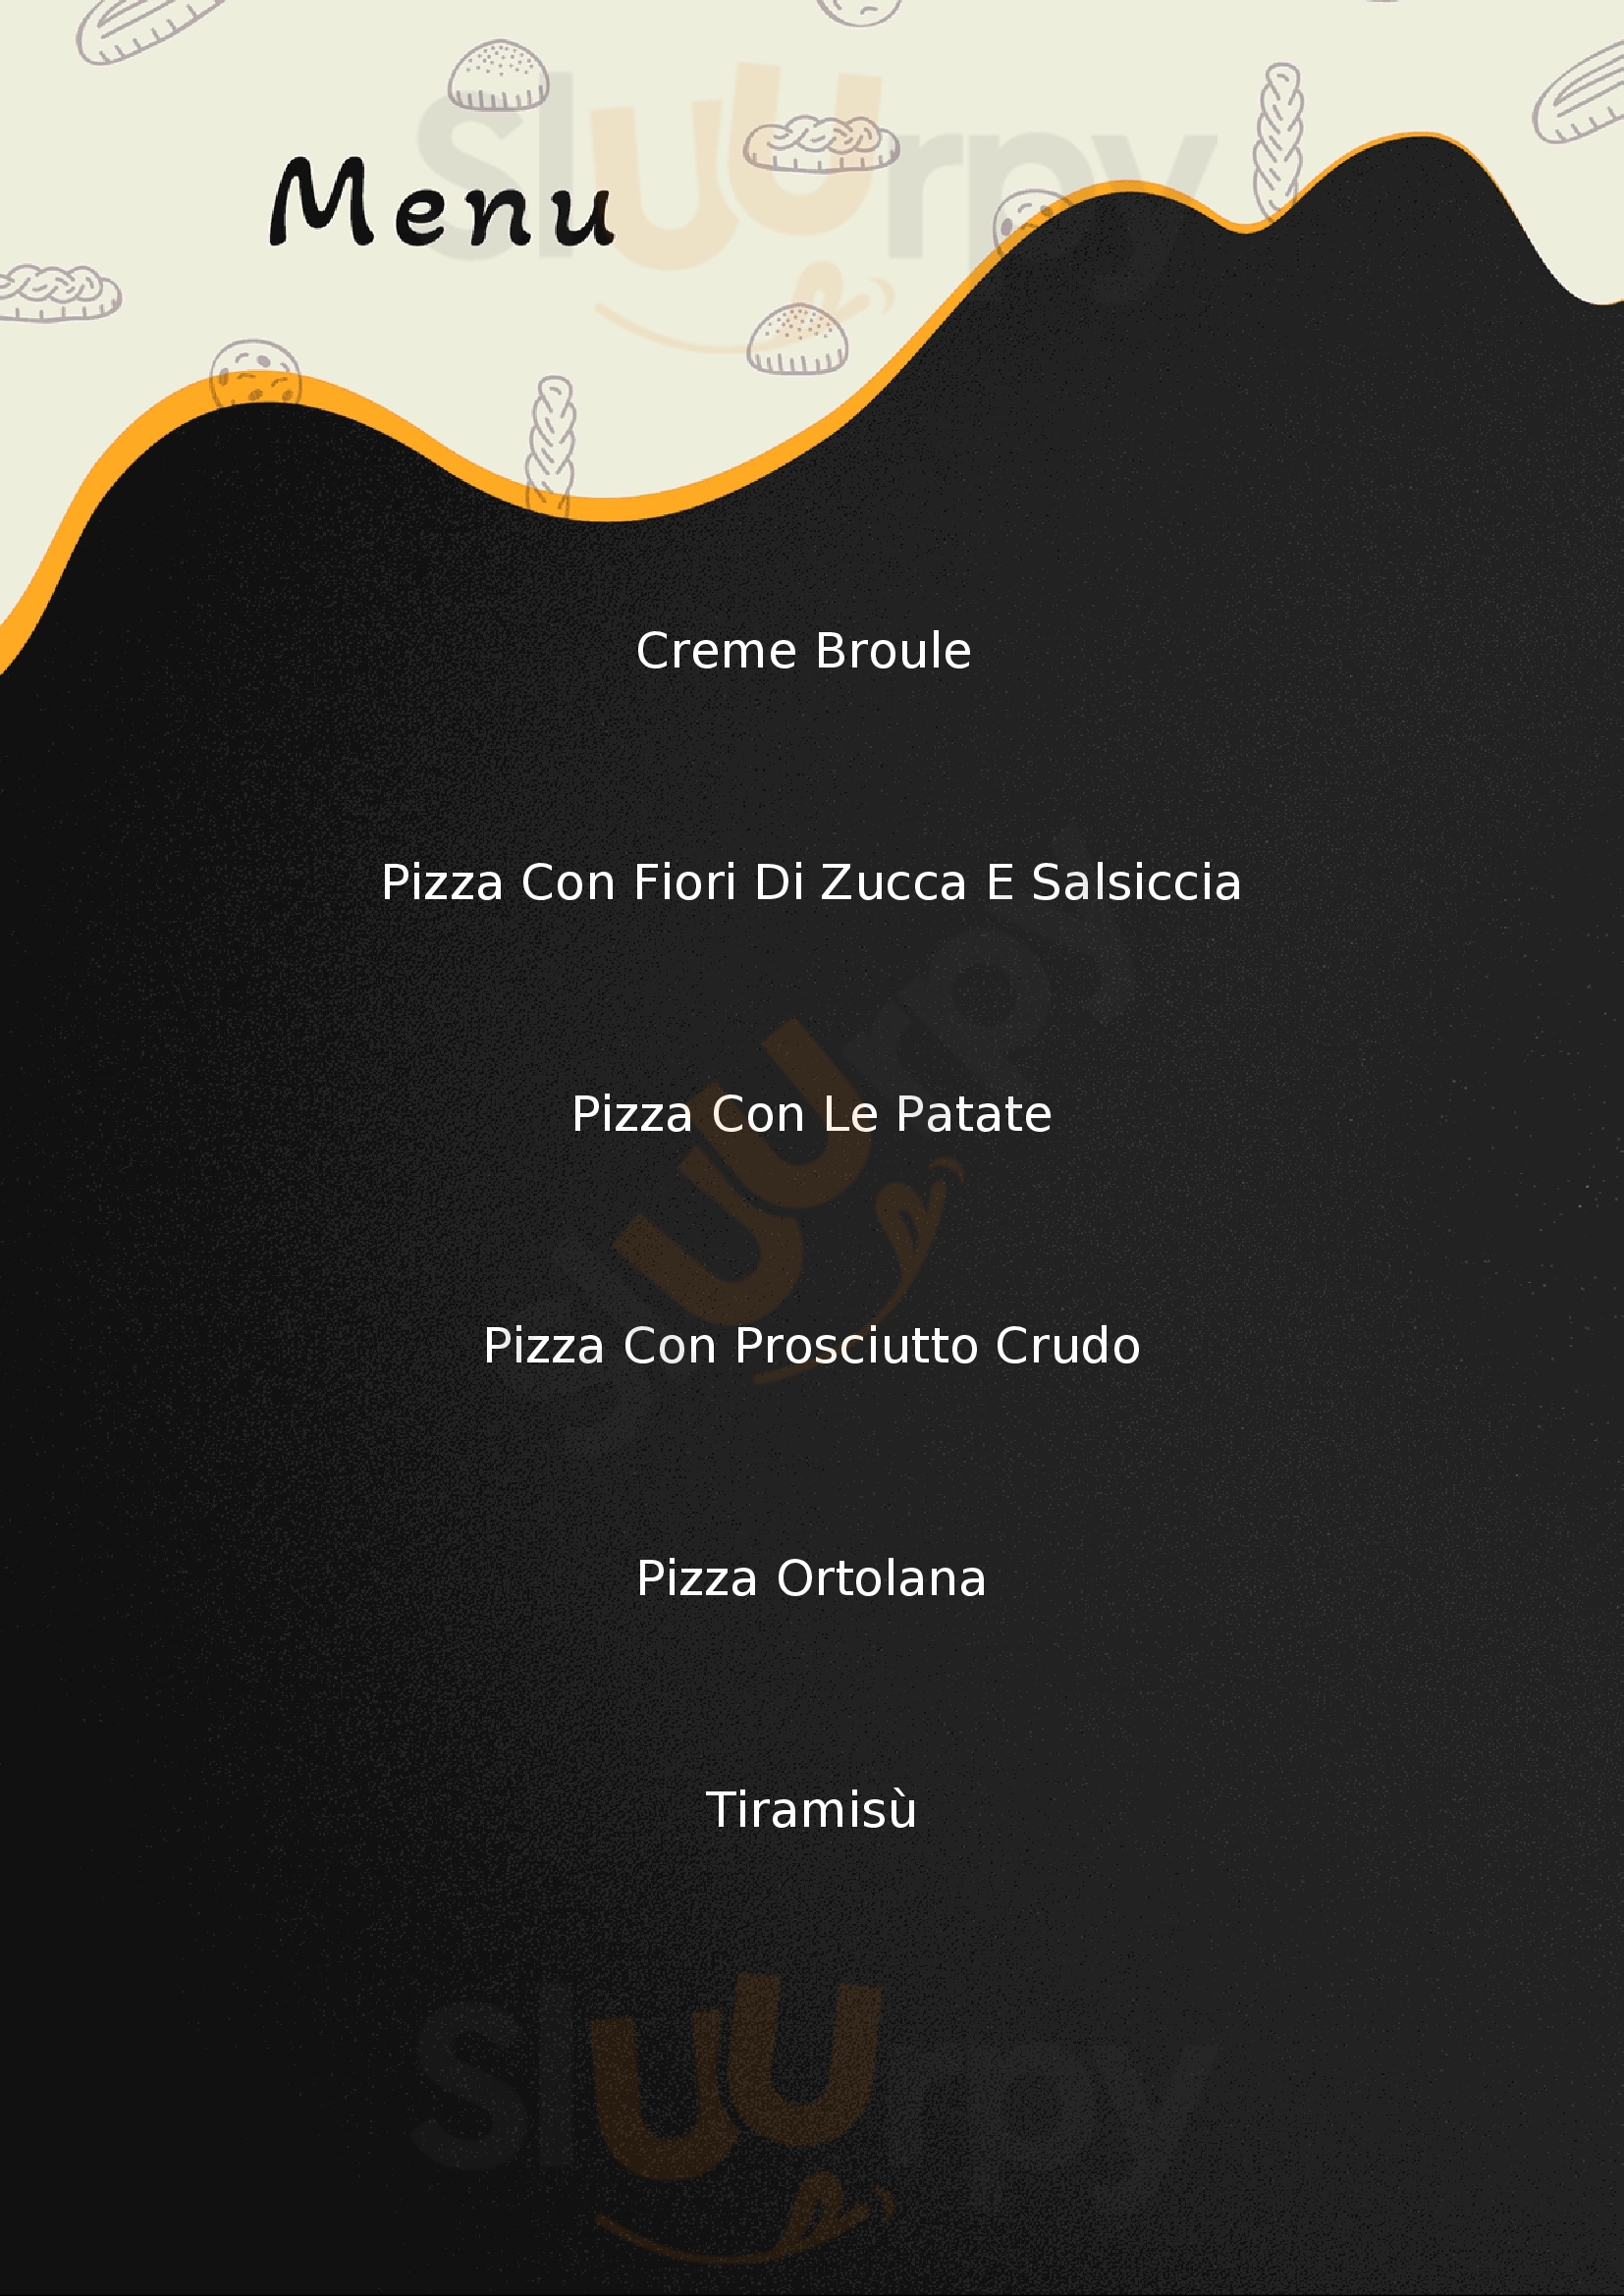 La Vecchia Pizzeria Volterra menù 1 pagina